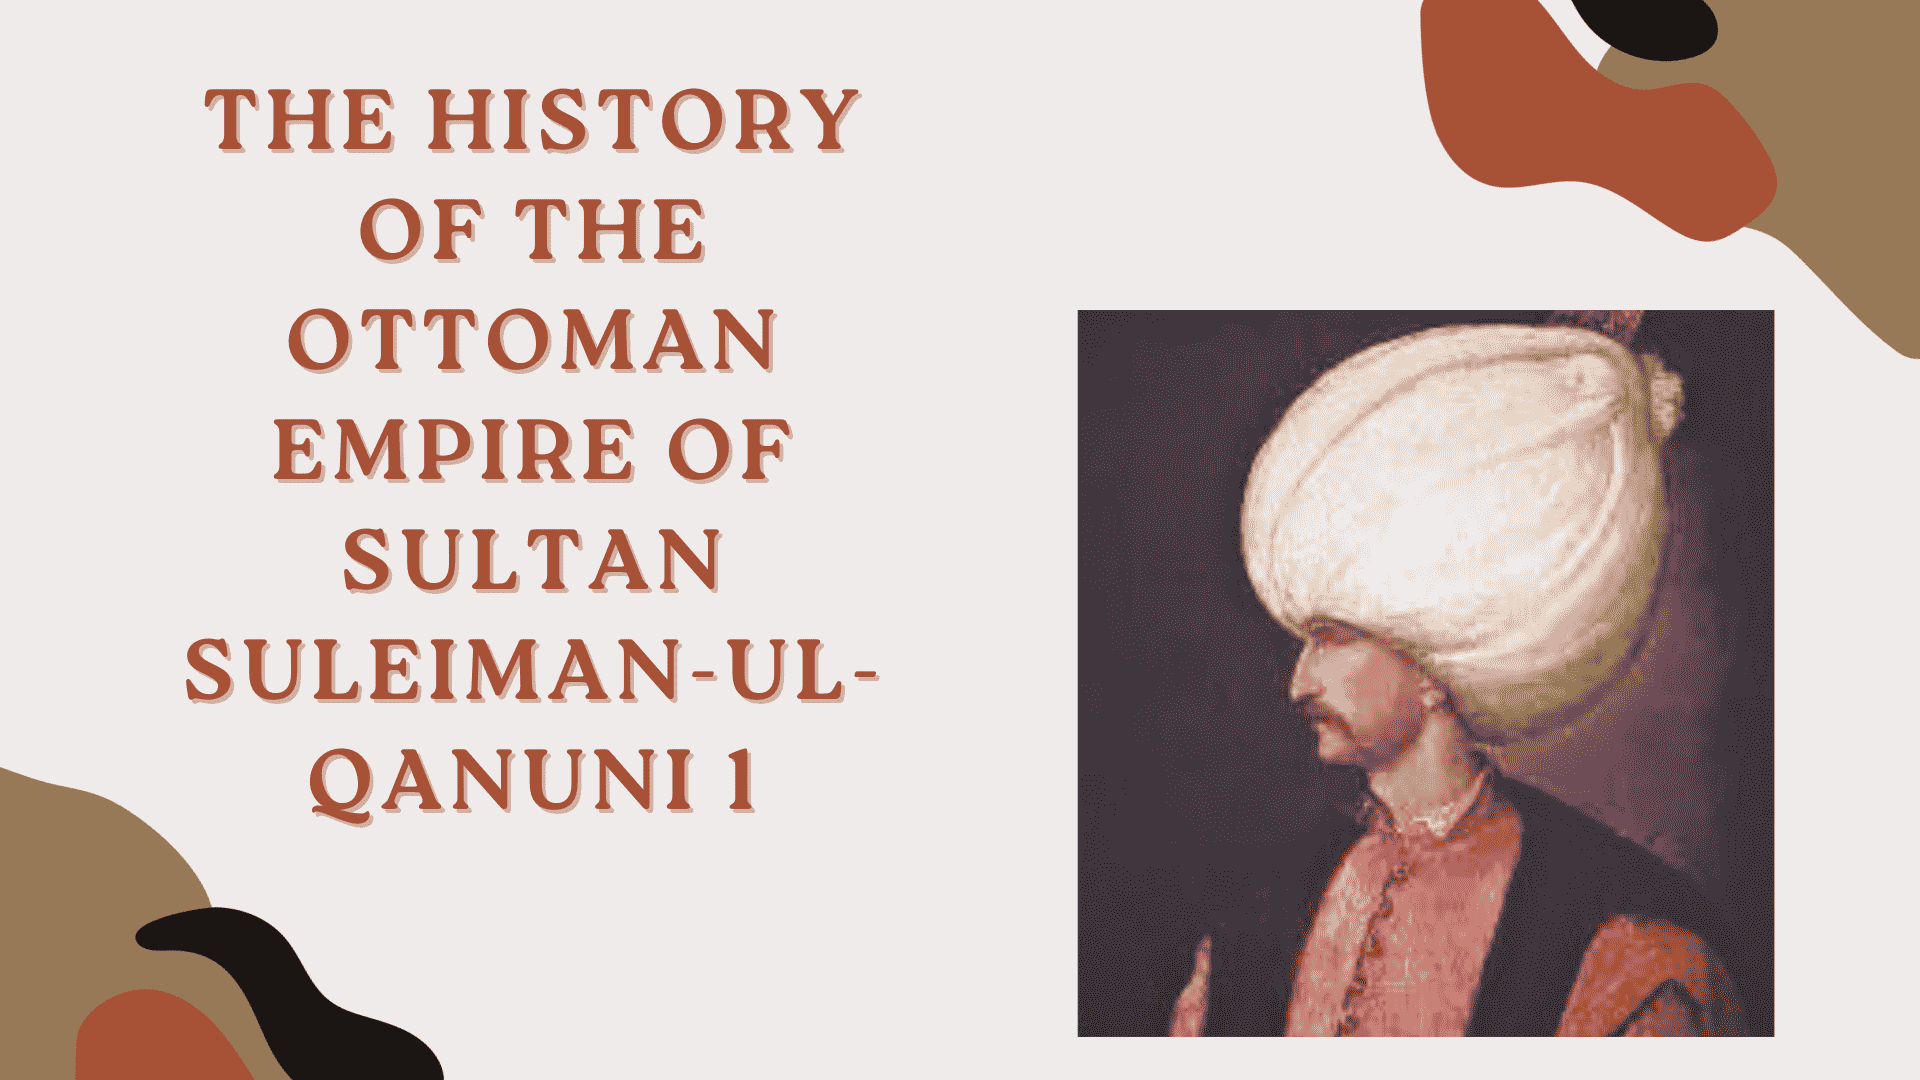 The History of the Ottoman Empire of Sultan Suleiman-ul-Qanuni 1